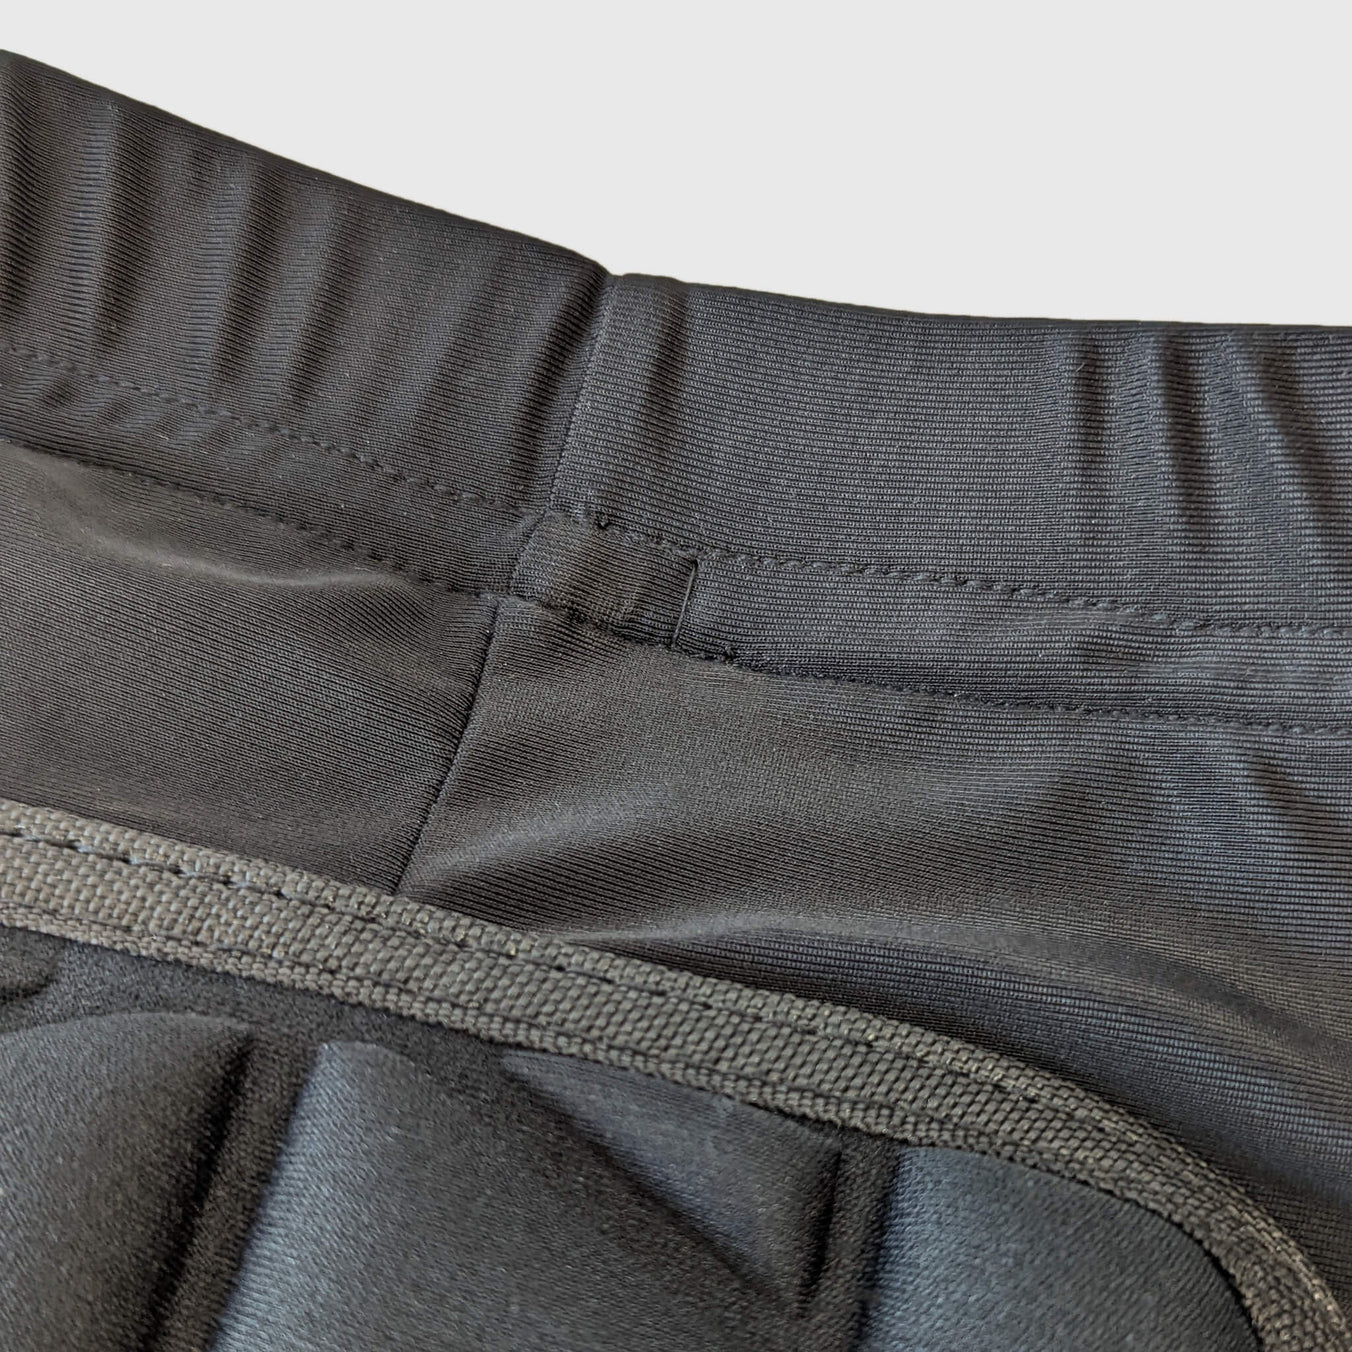 Black Ice Impact shorts close up of fabrick